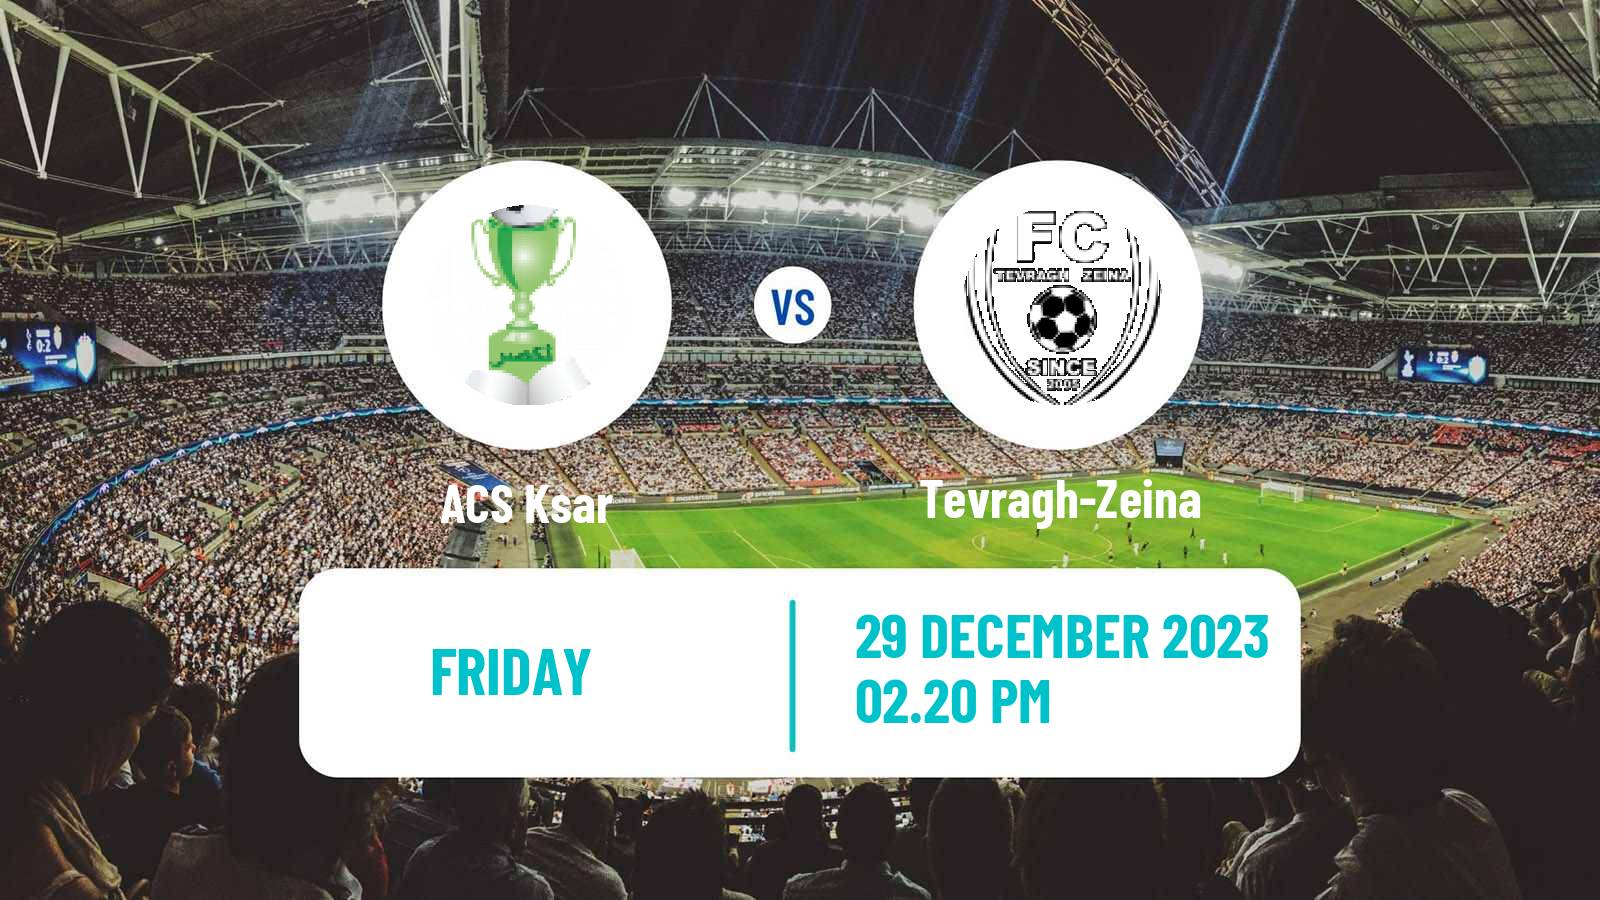 Soccer Mauritania Ligue 1 Ksar - Tevragh-Zeina